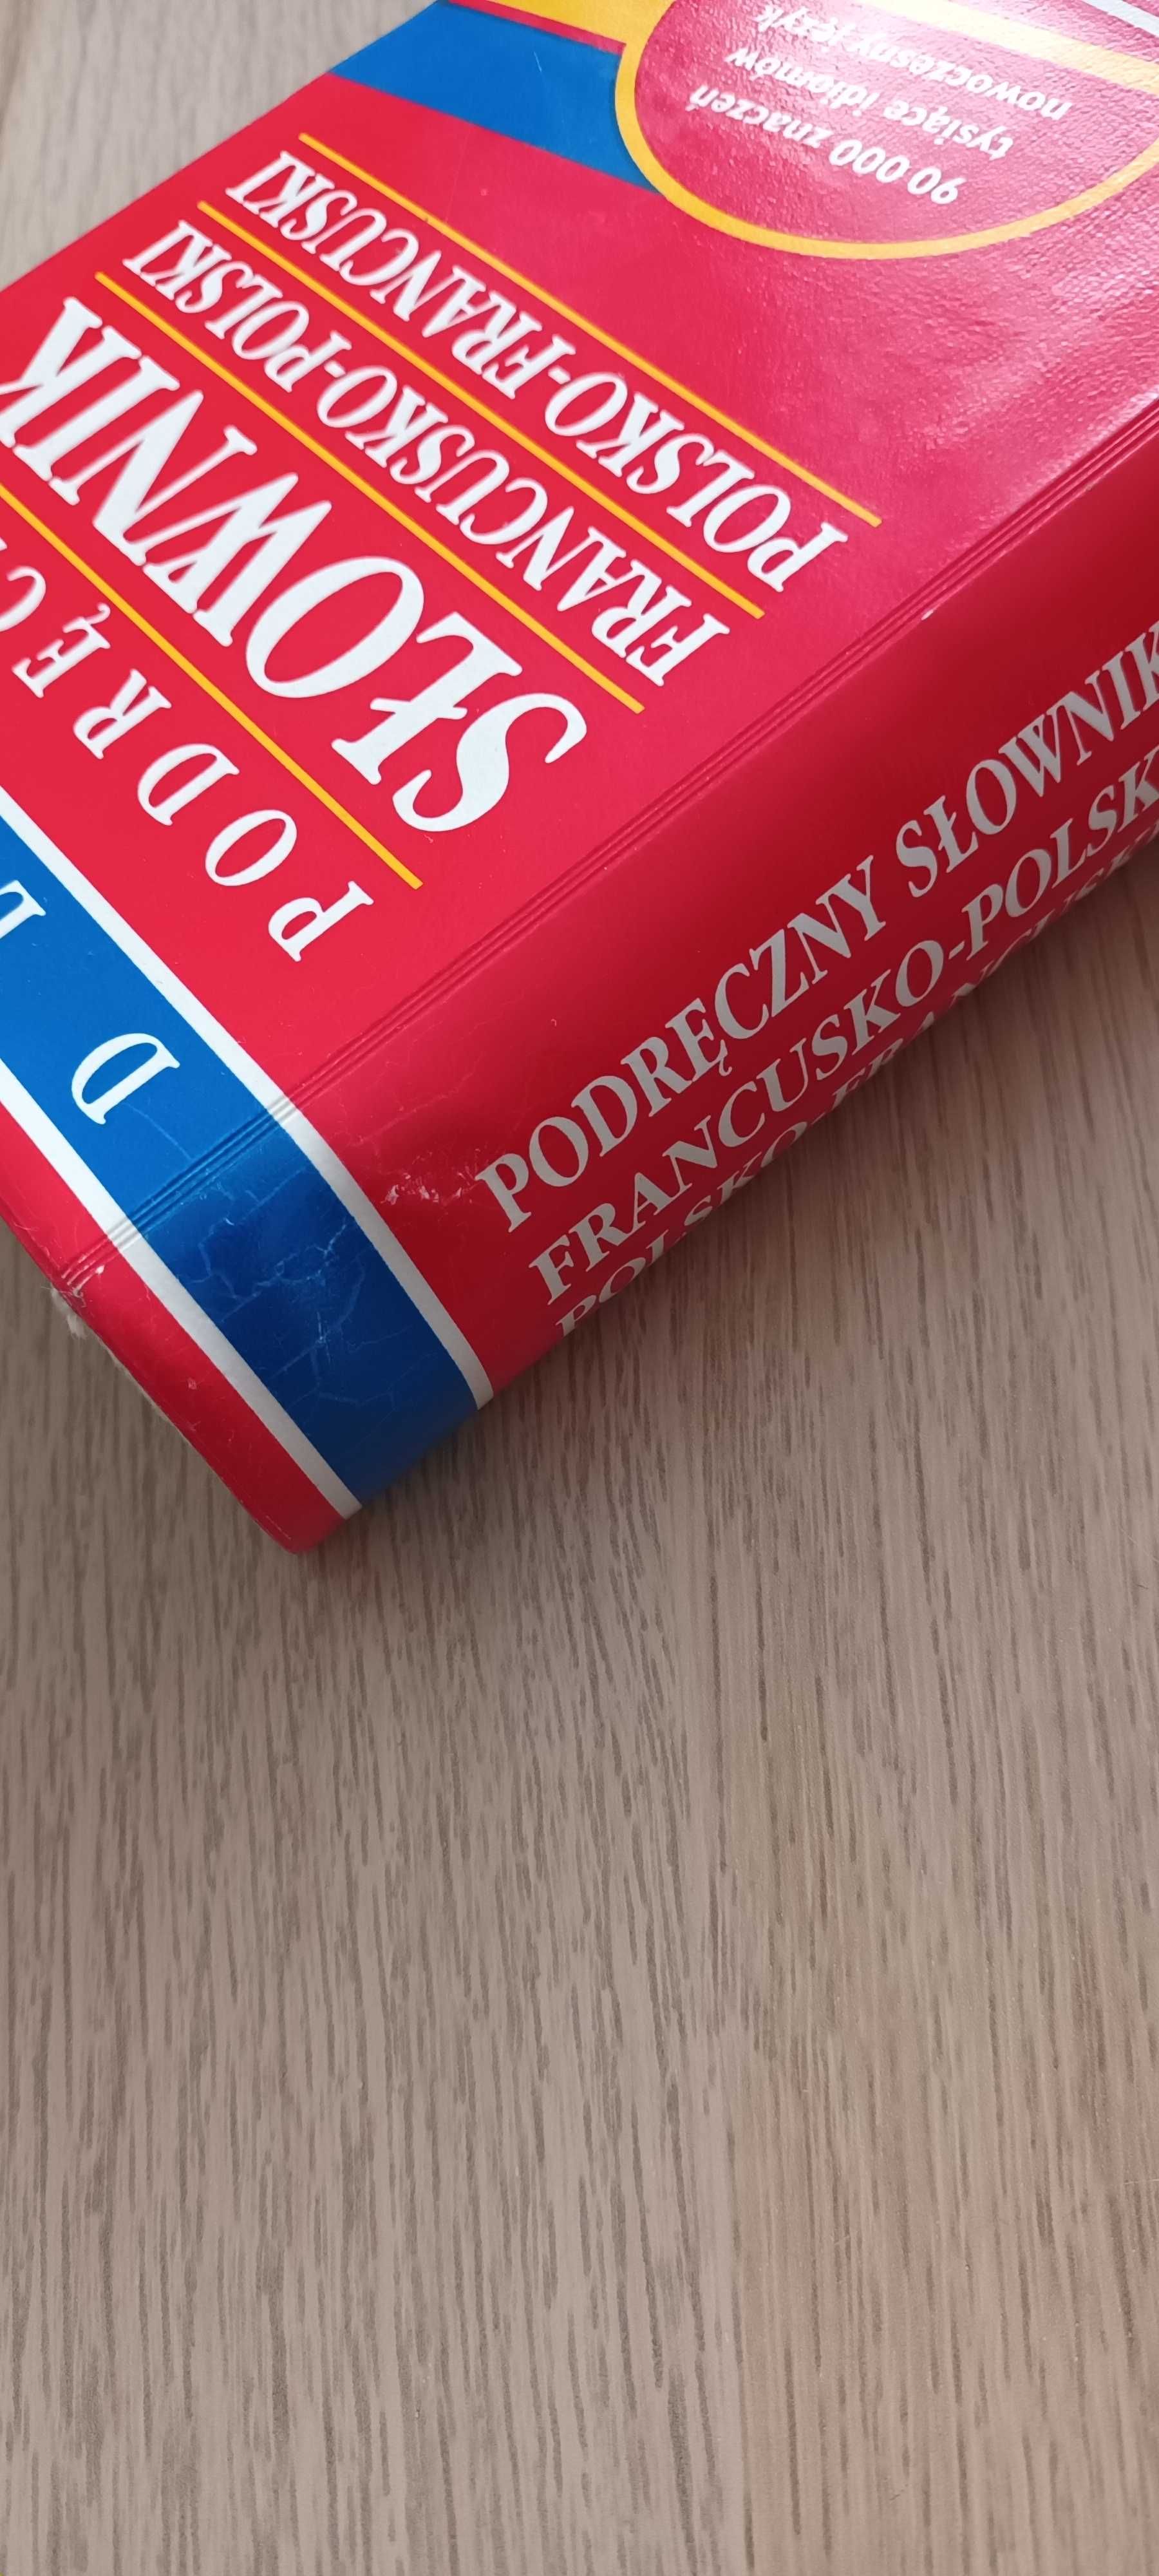 Podręczny słownik języka francuskiego-polskiego